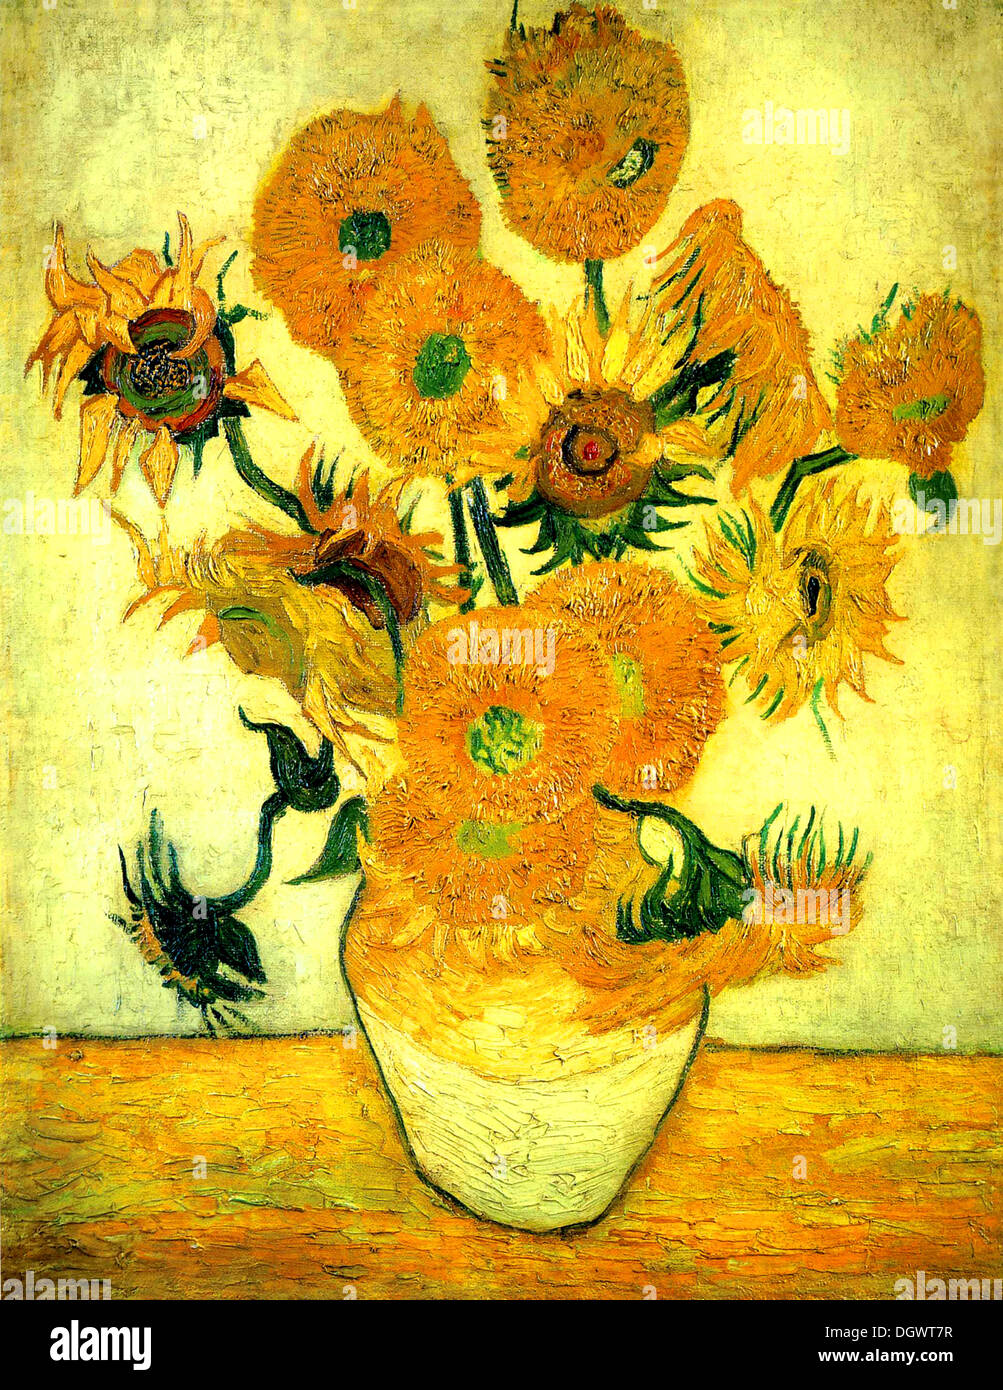 Les tournesols de Vincent van Gogh, 1889 Banque D'Images